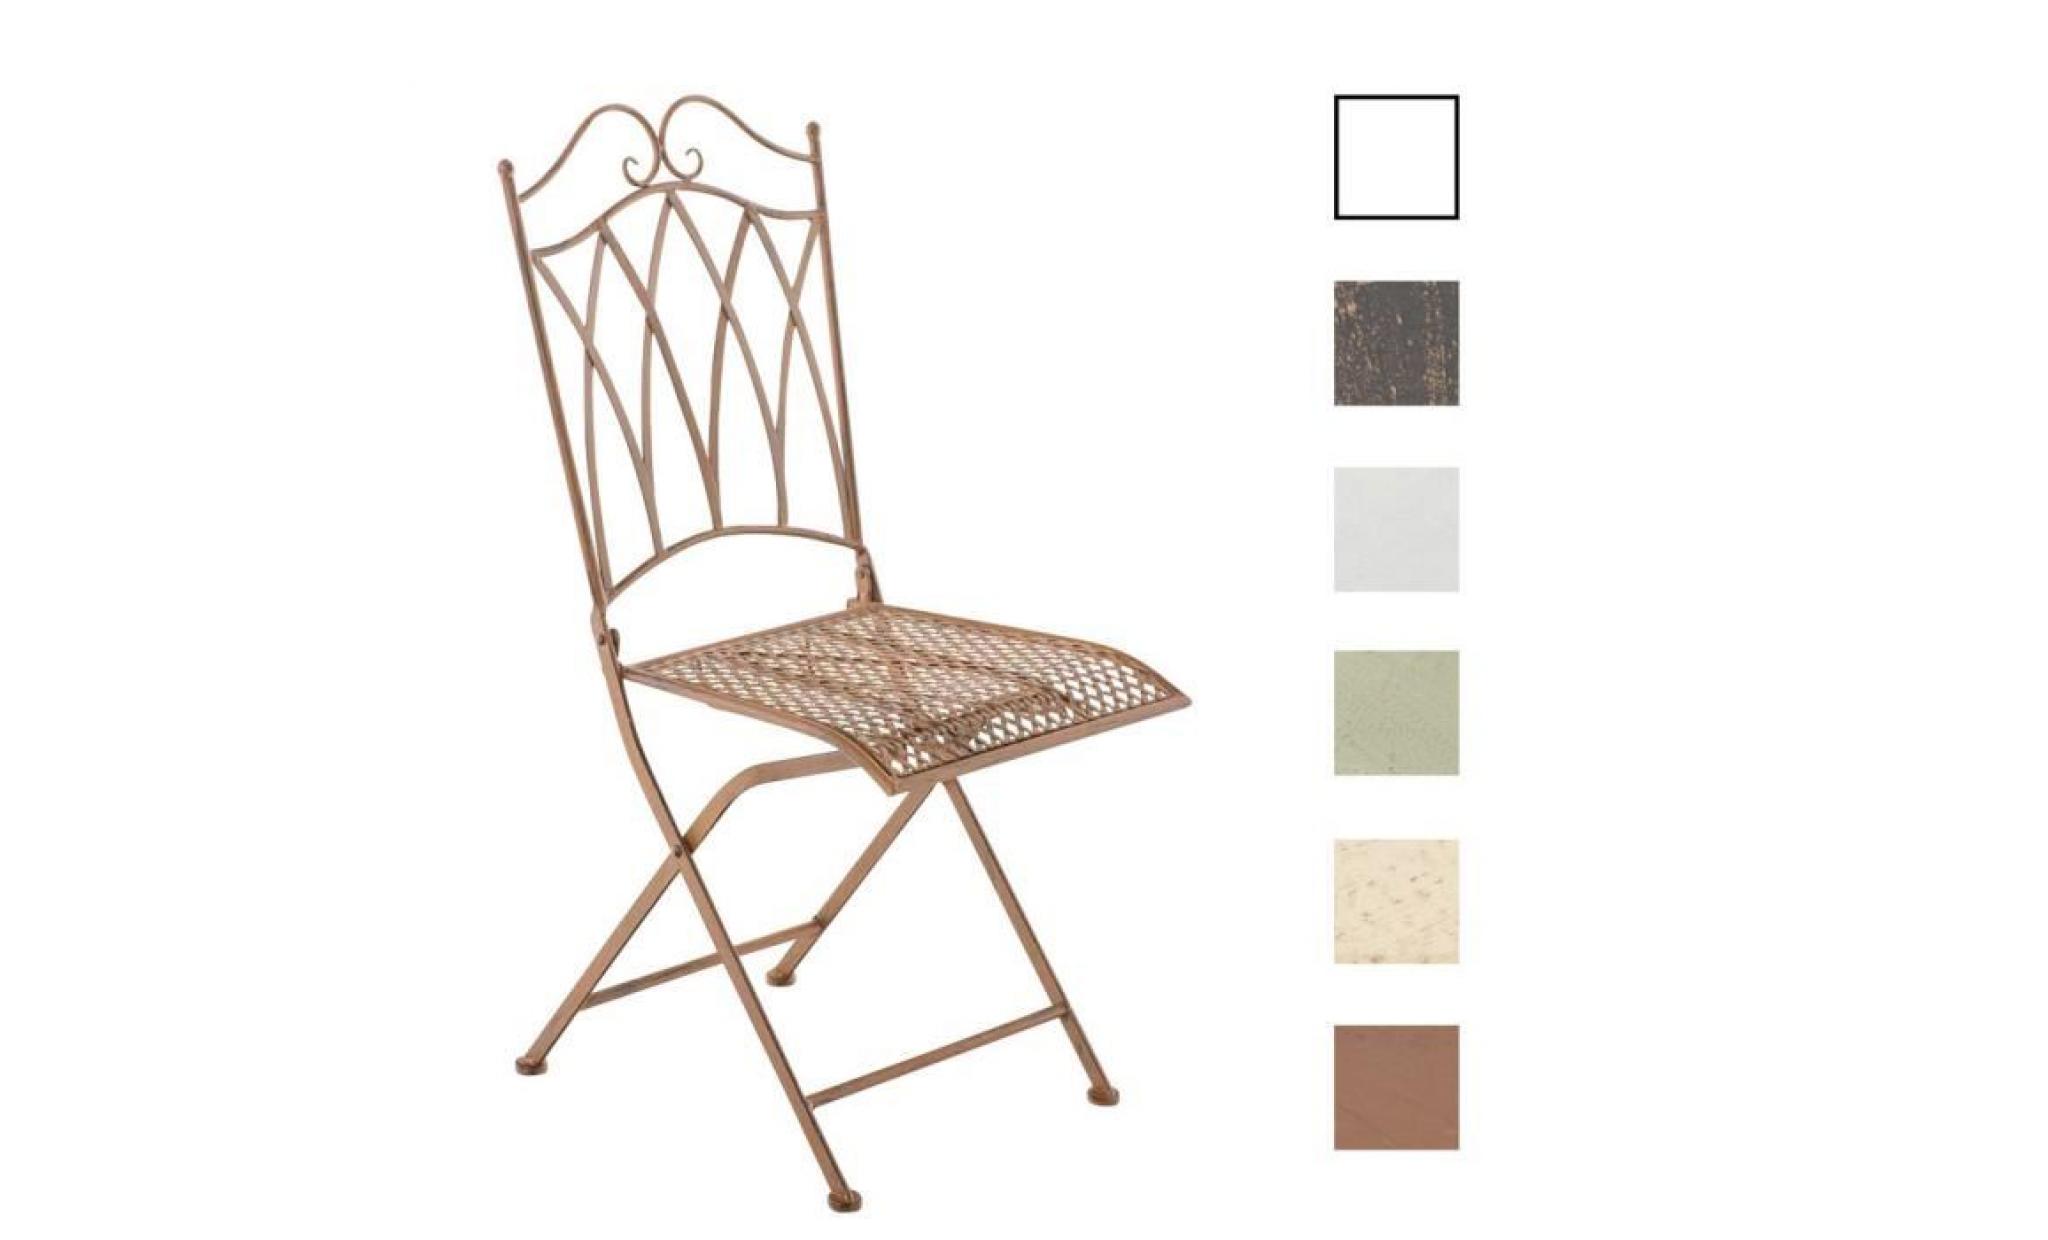 clp chaise nostalgique pliable lunis, chaise fer forgé, chaise pliante, chaise antique, 6 couleurs au choix 91 cm bronze